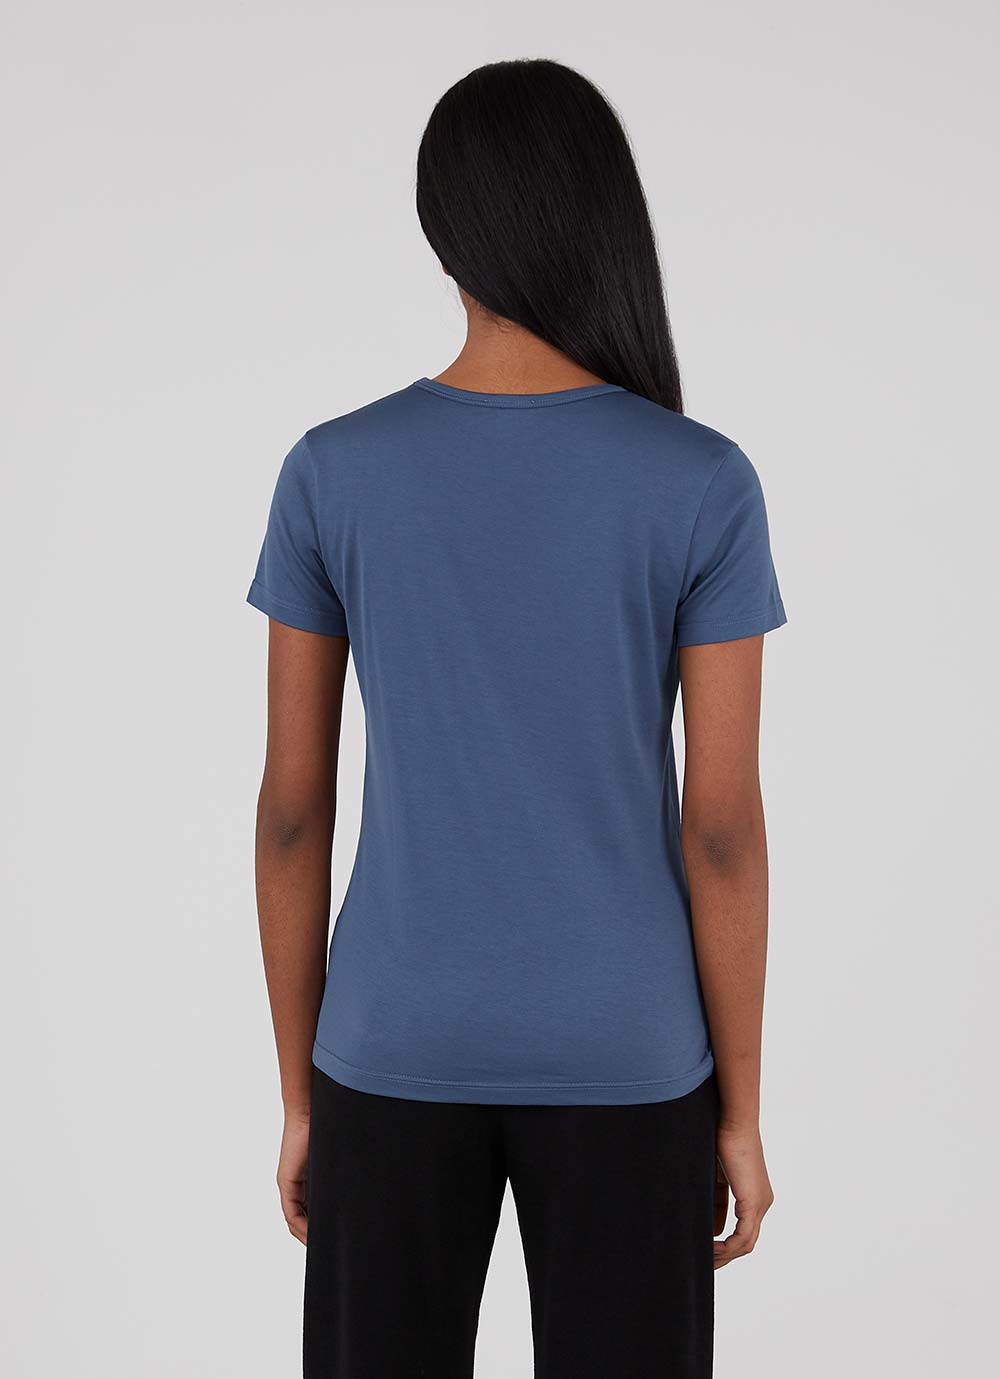 Women's Classic T-shirt in Smoke Blue